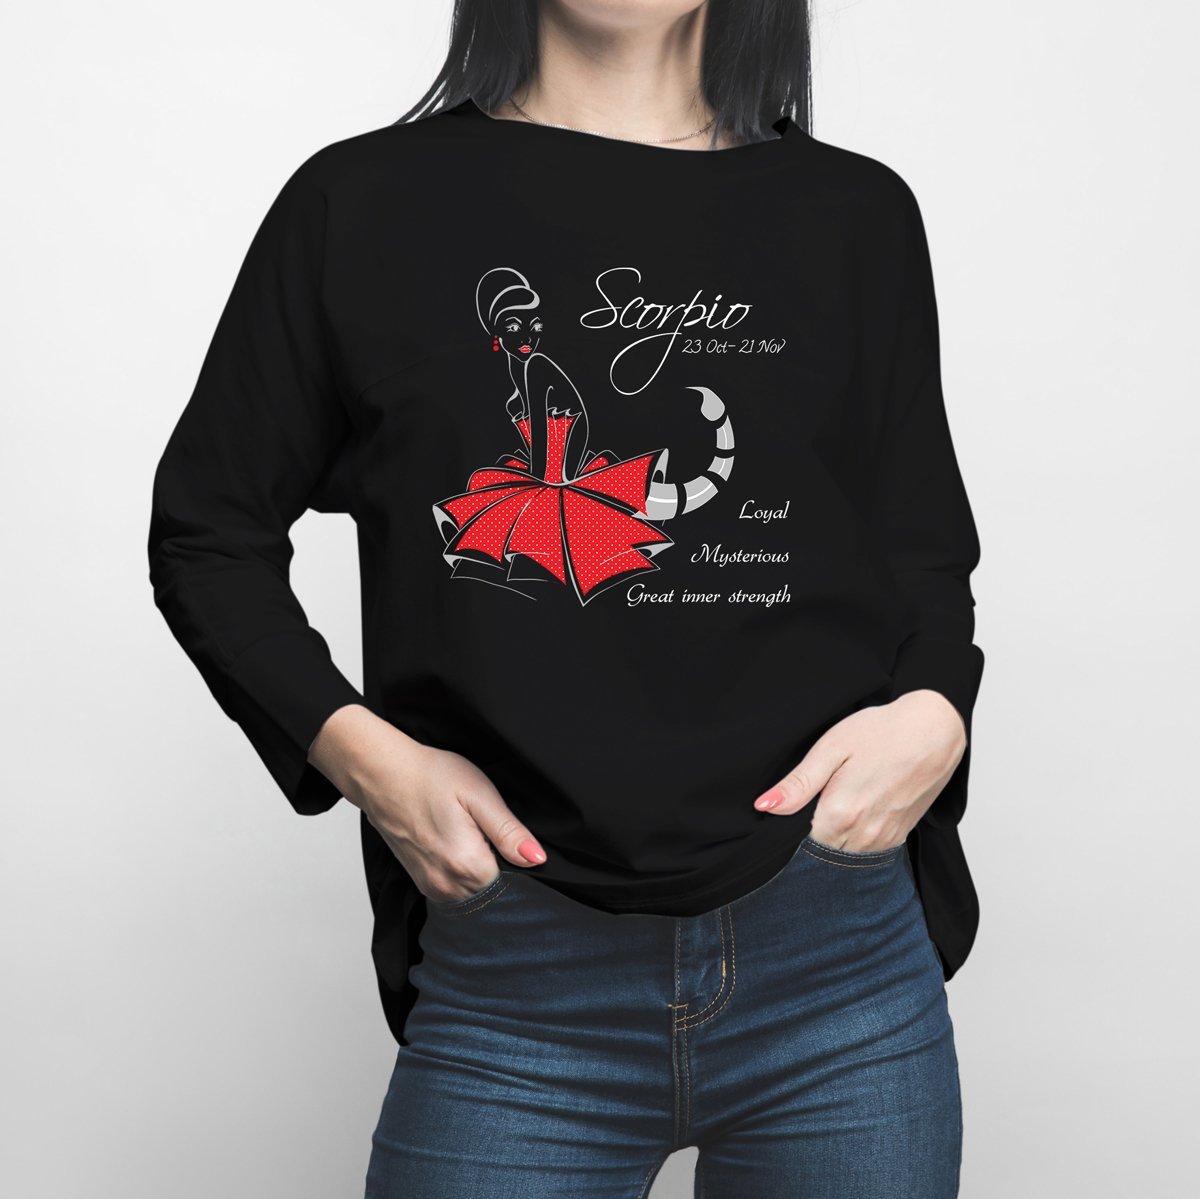 Horoscope Scorpio Long Sleeve Shirt - Happiness Idea